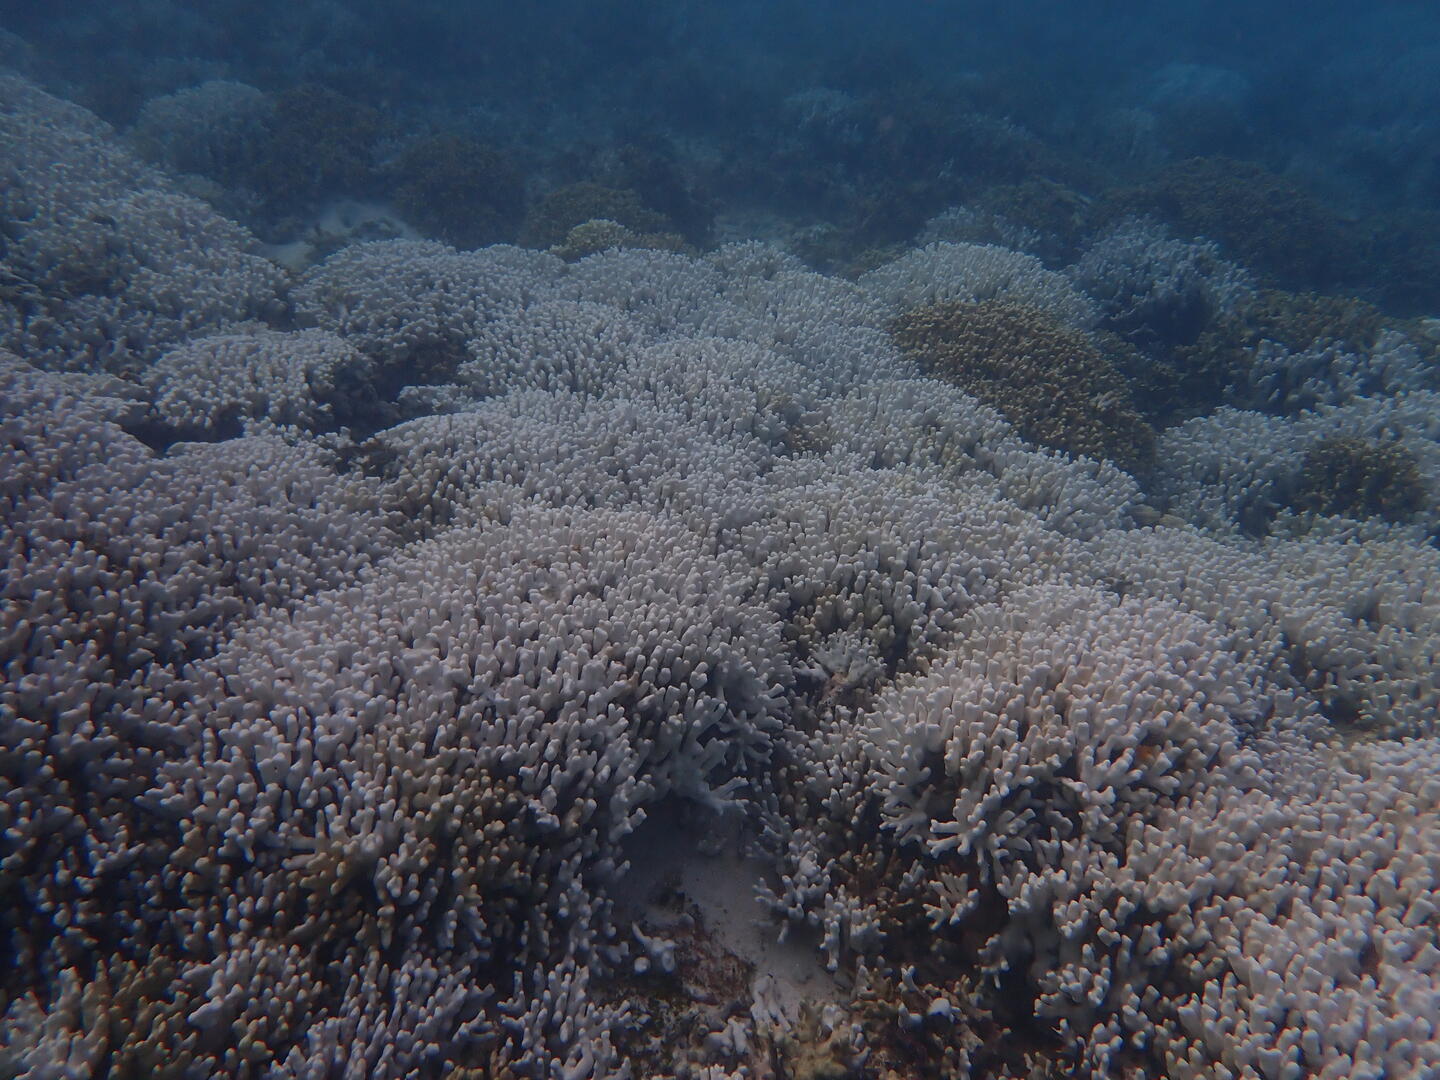 Marine heatwaves: Intense coral bleaching recorded in Lakshadweep